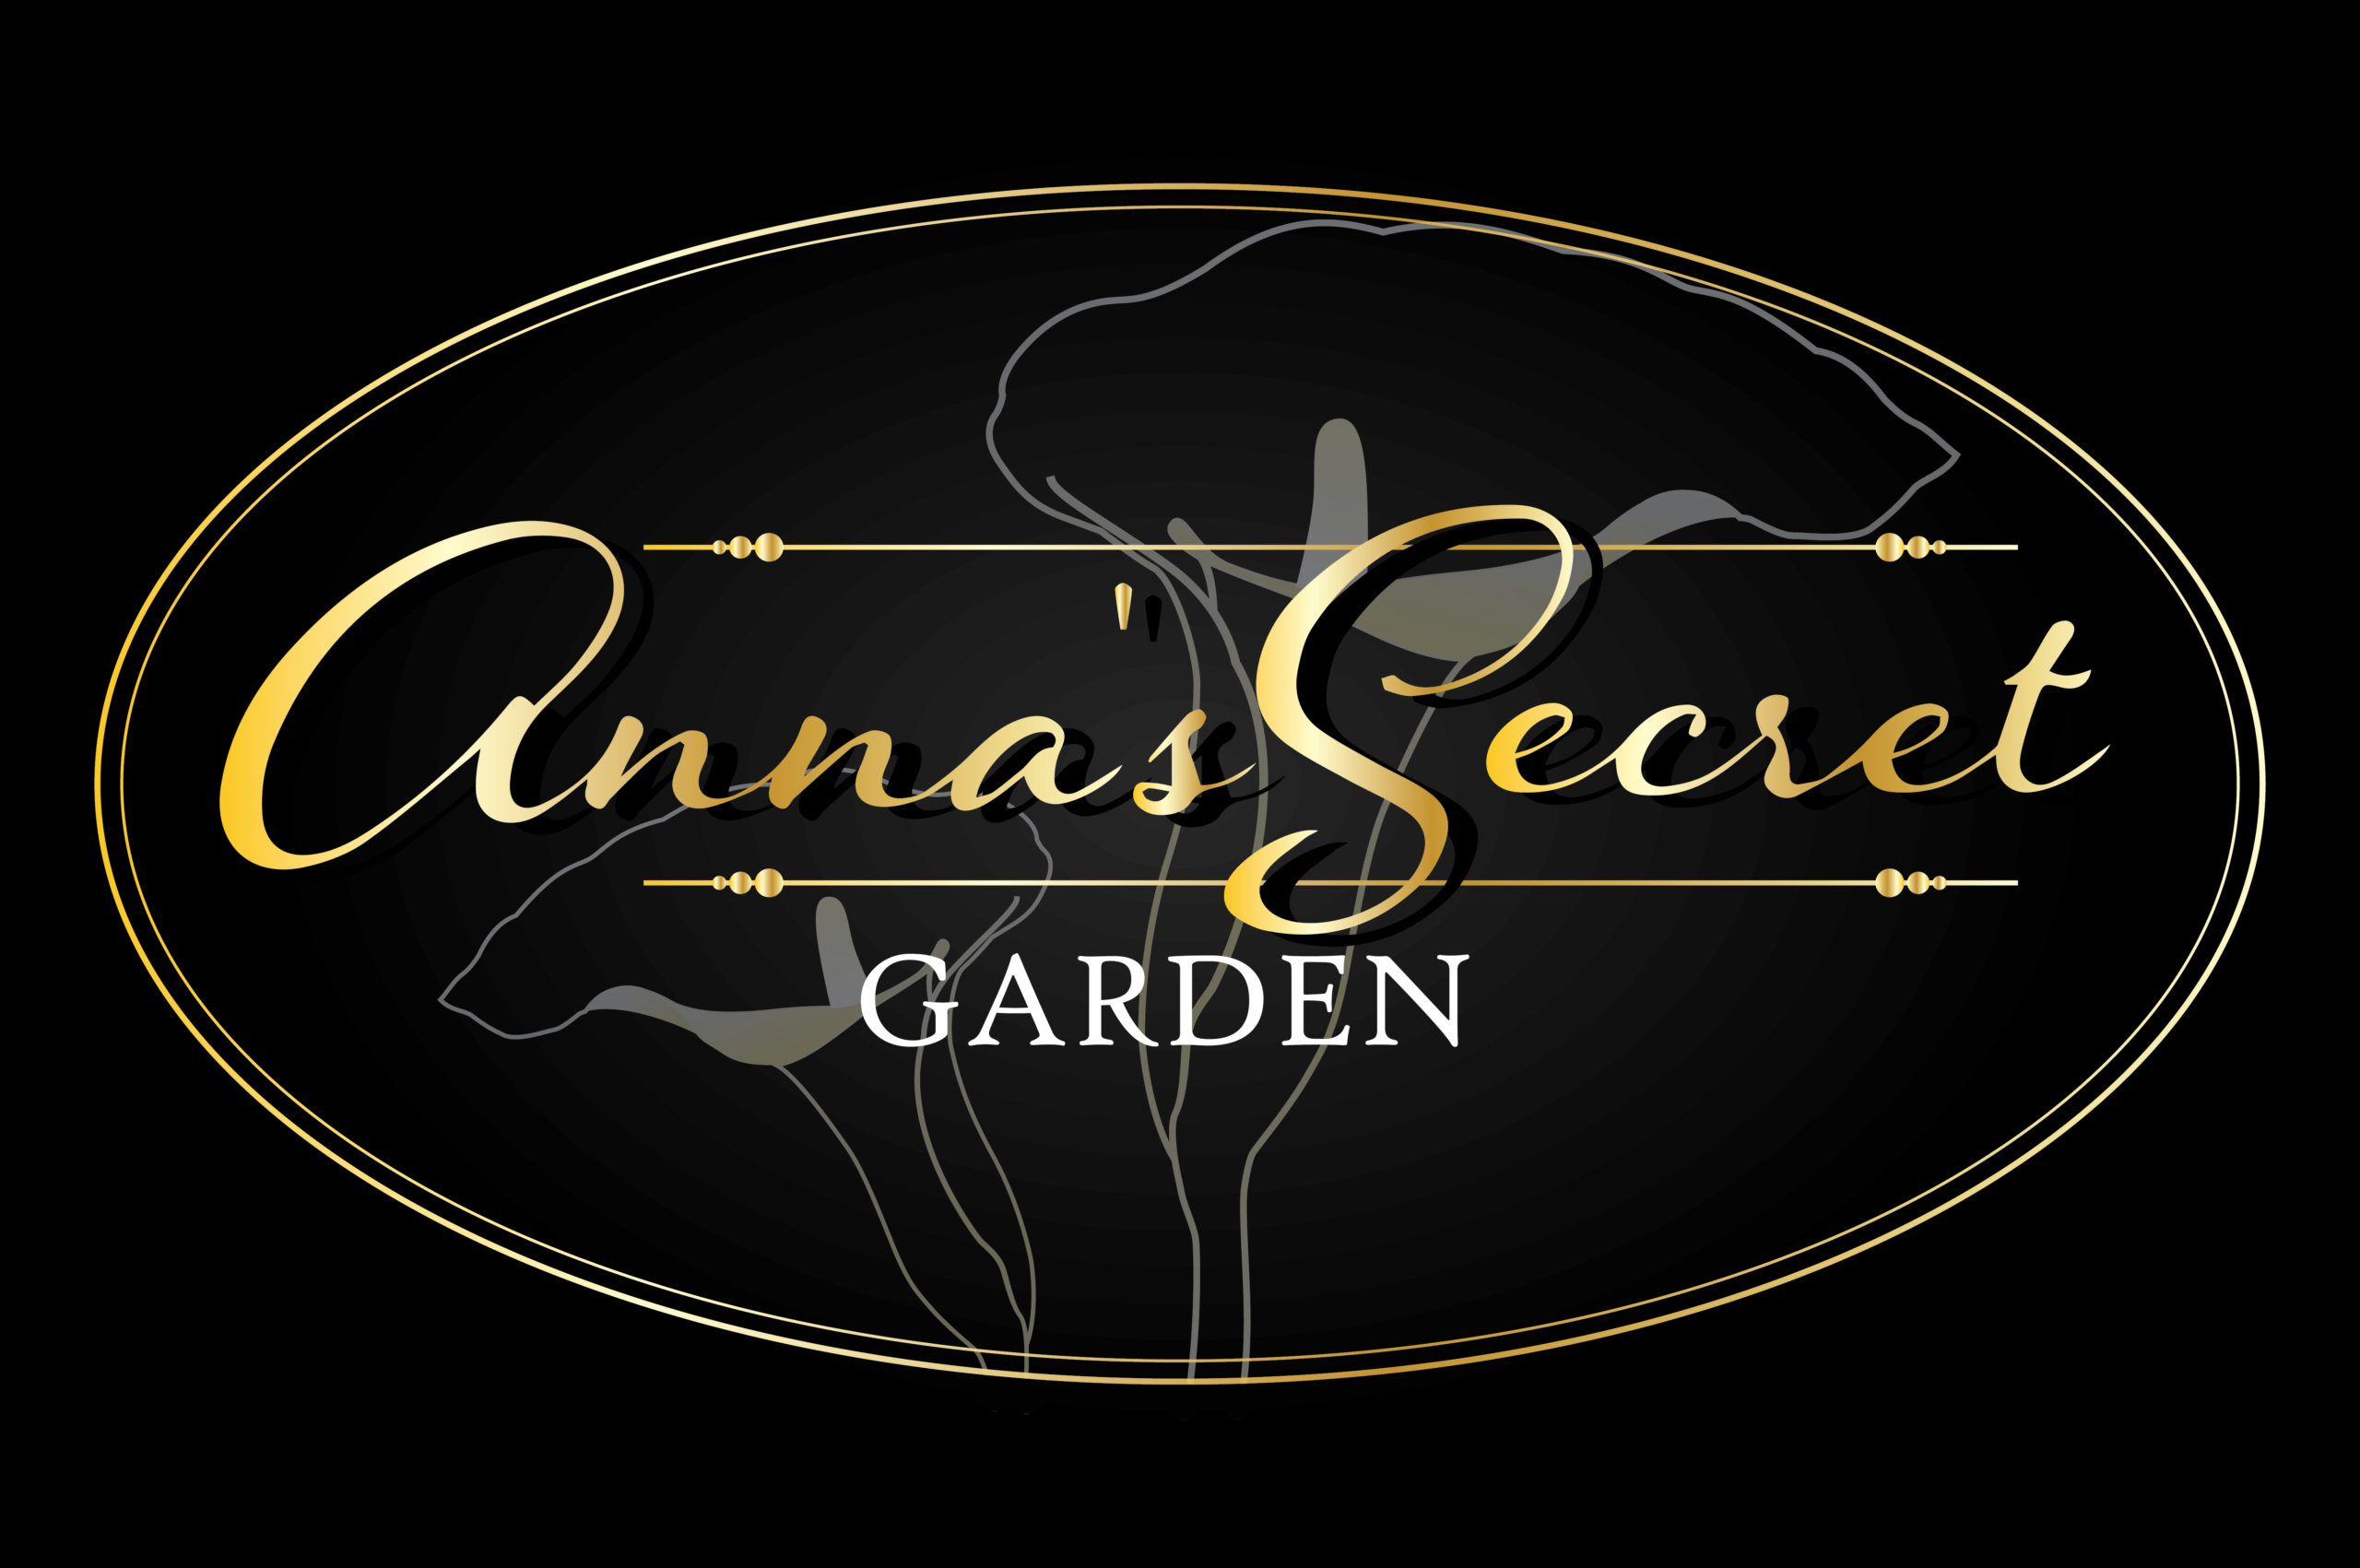 We recommend Anna's Secret Garden - The US Armenians